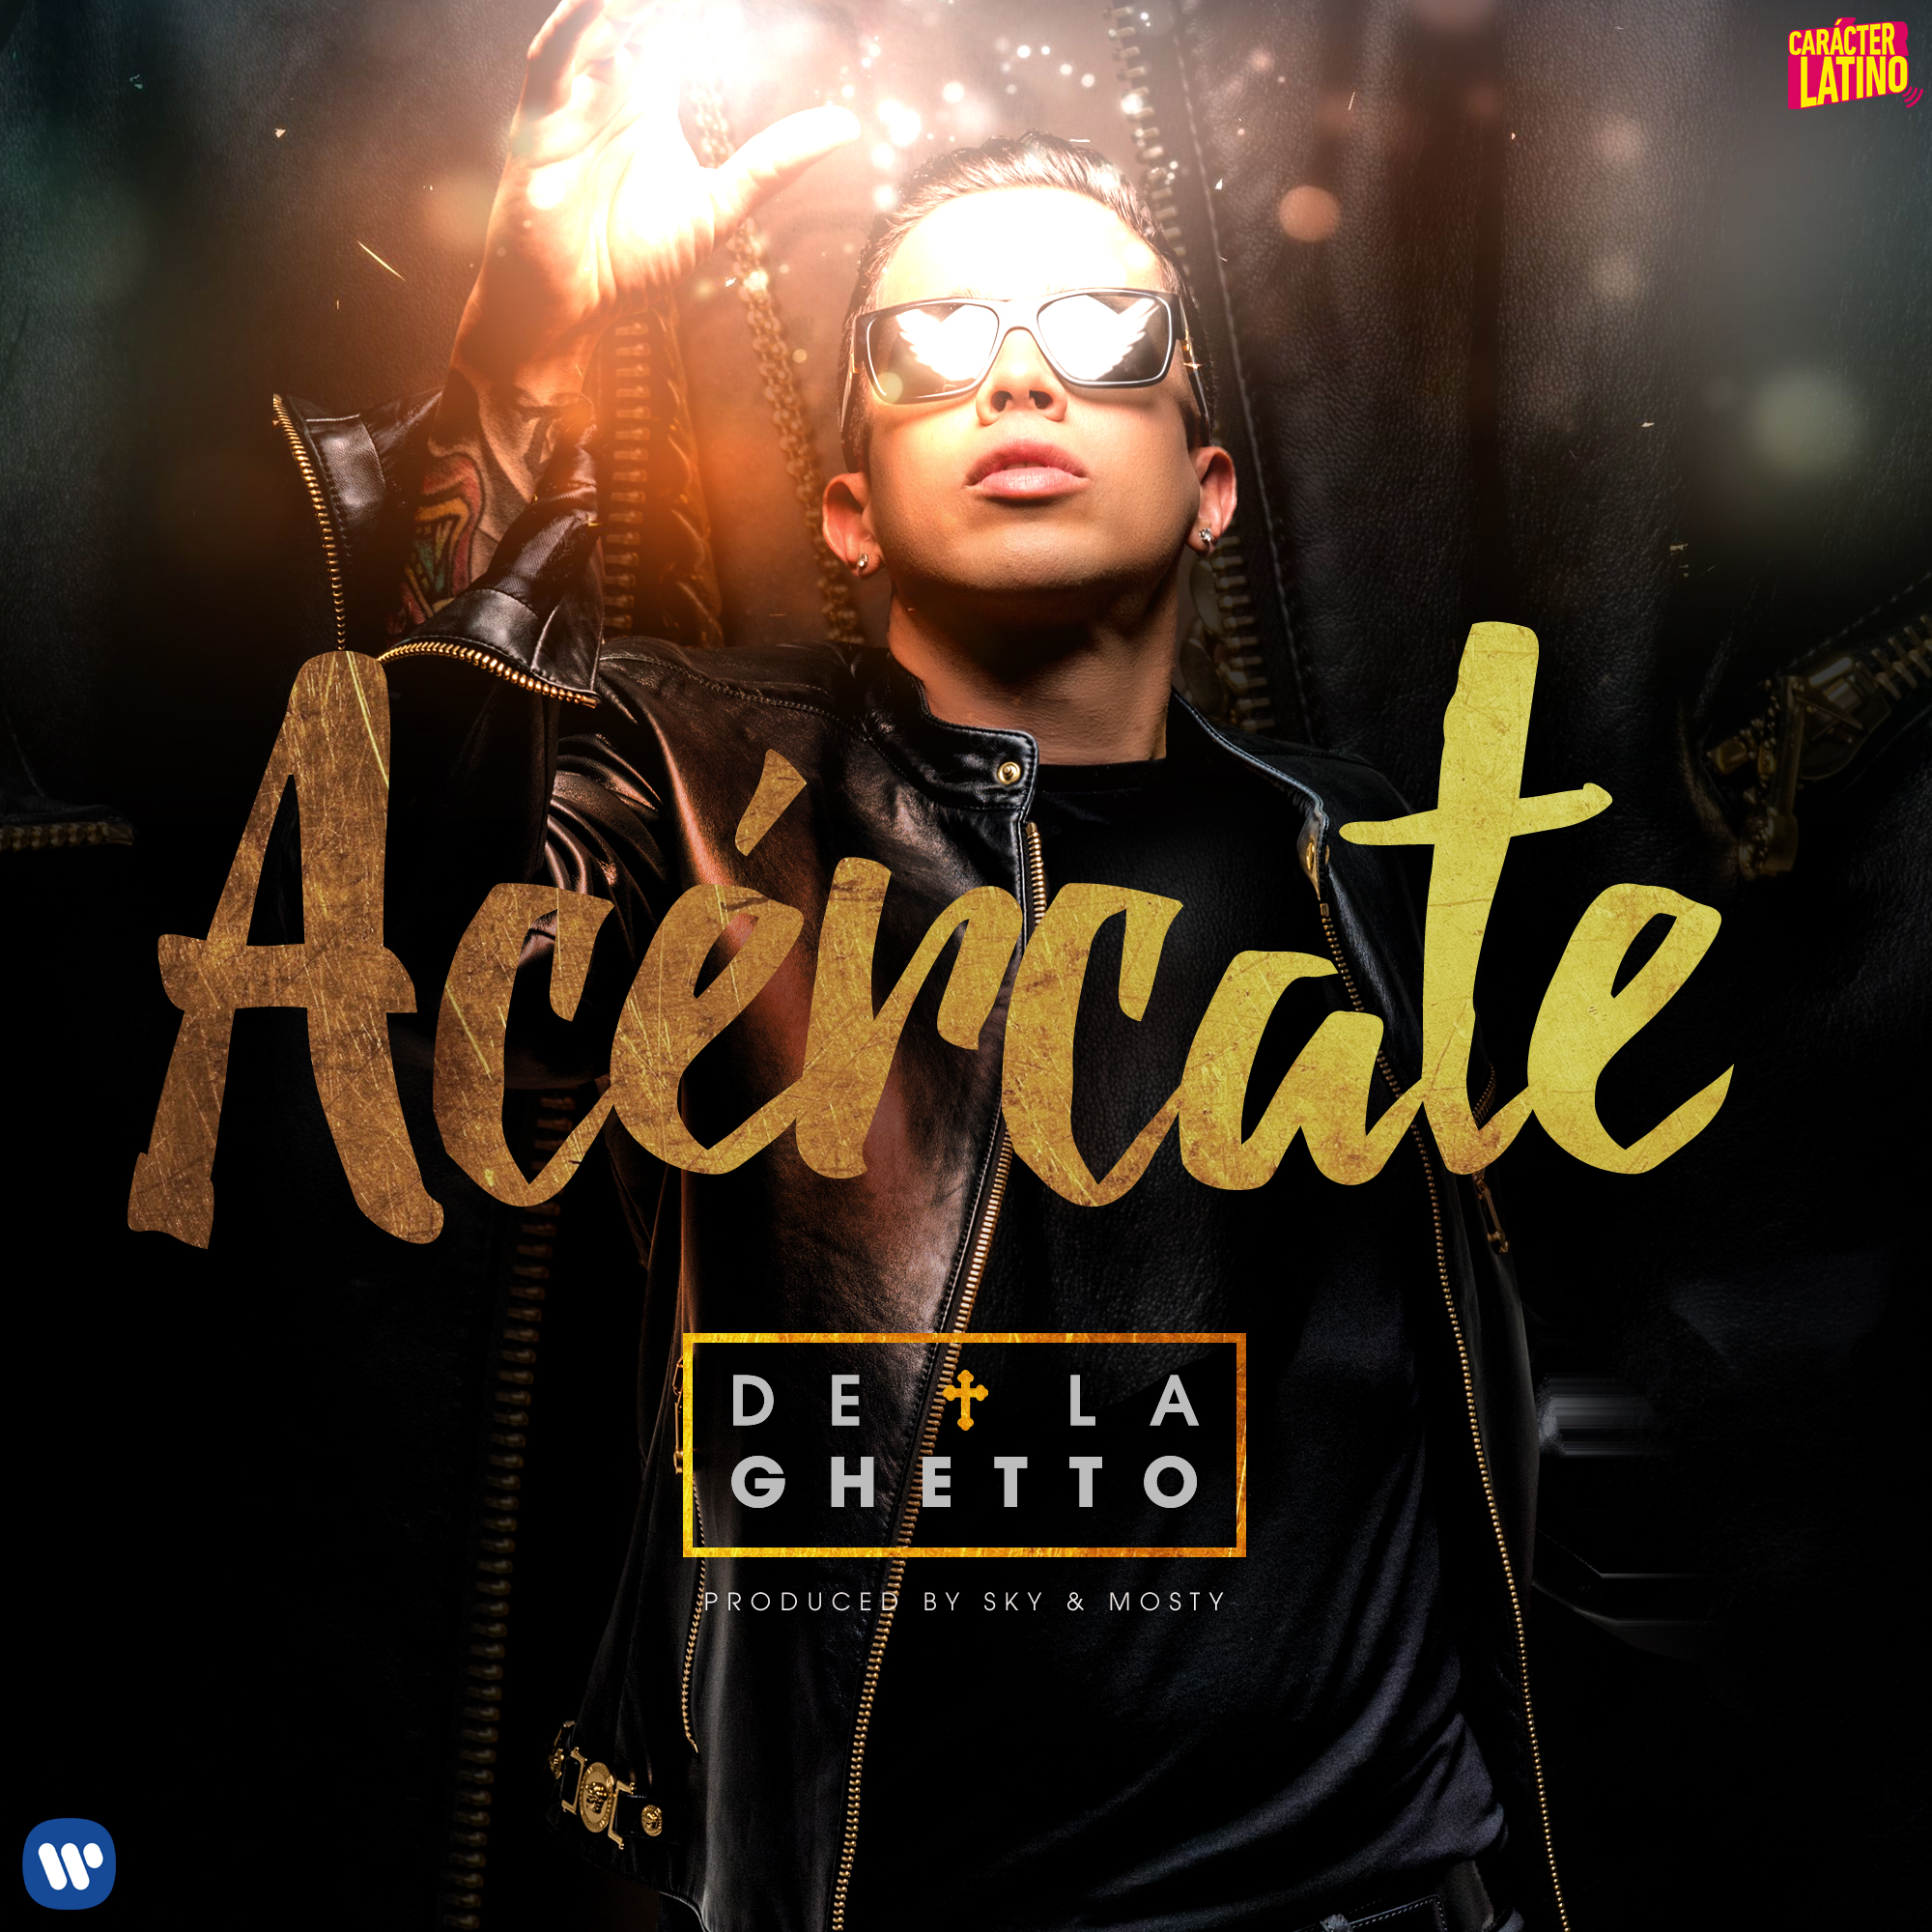 De La Ghetto vuelve a nacer musicalmente con "Acércate"